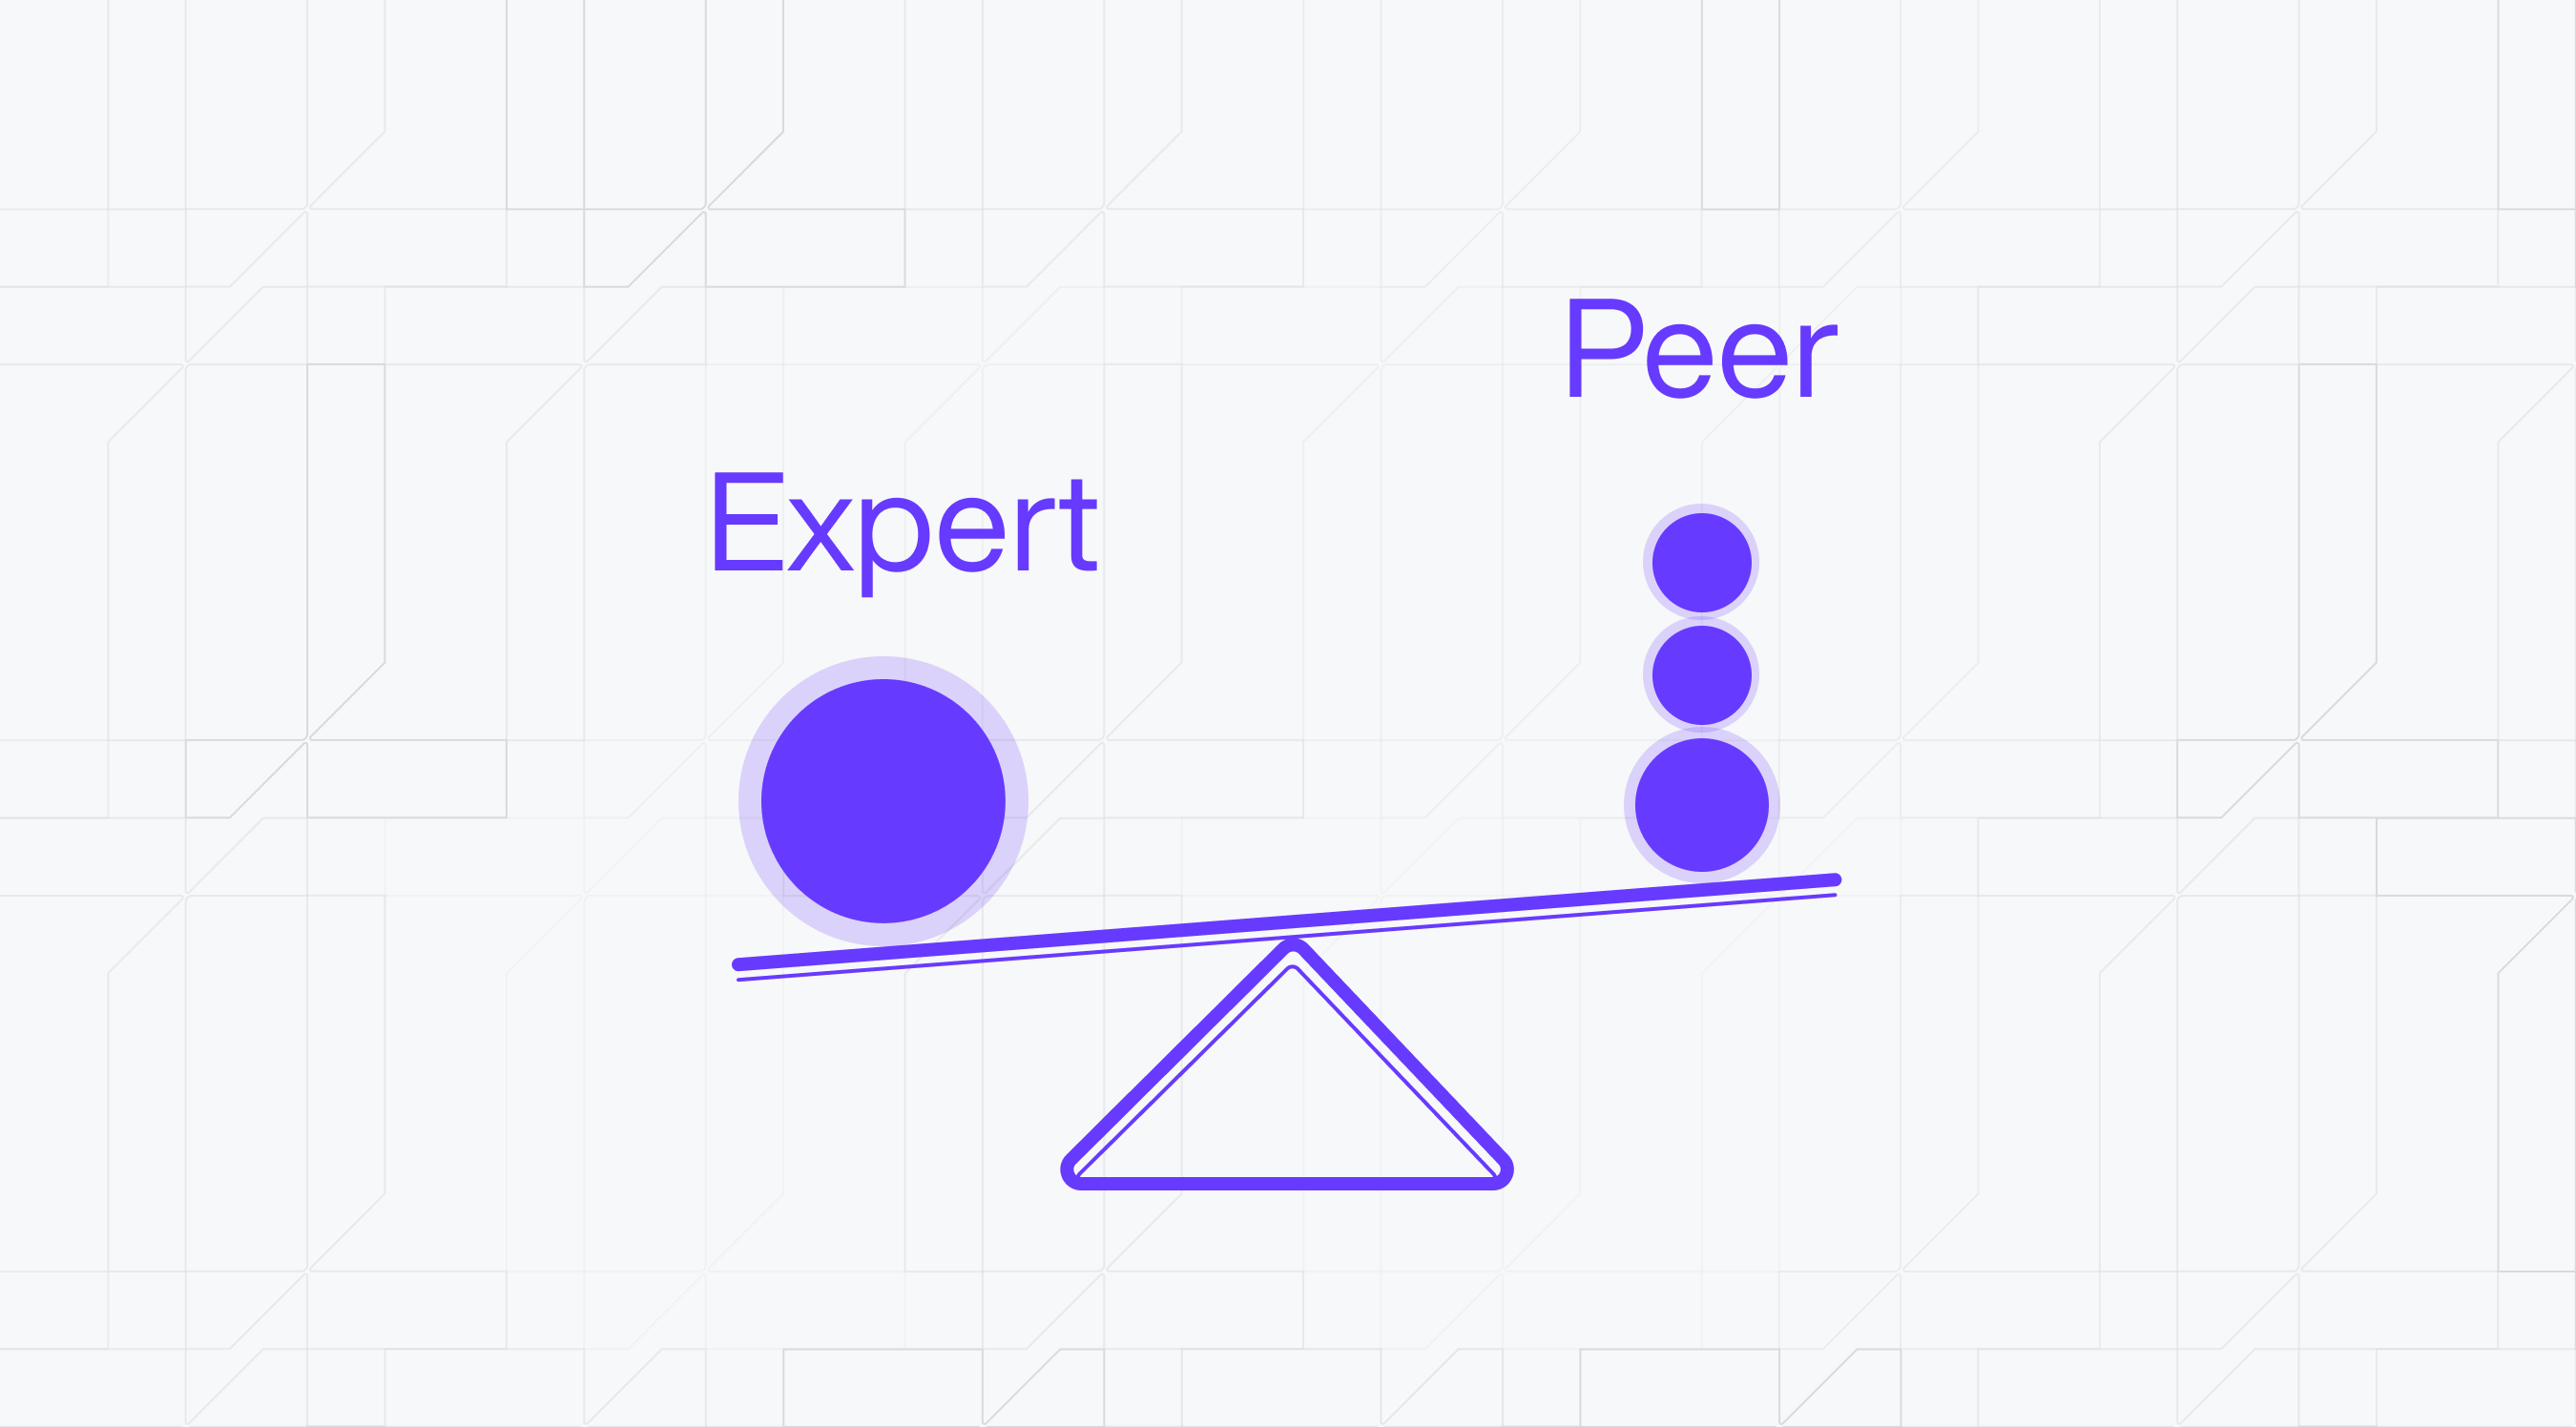 Expert vs peer